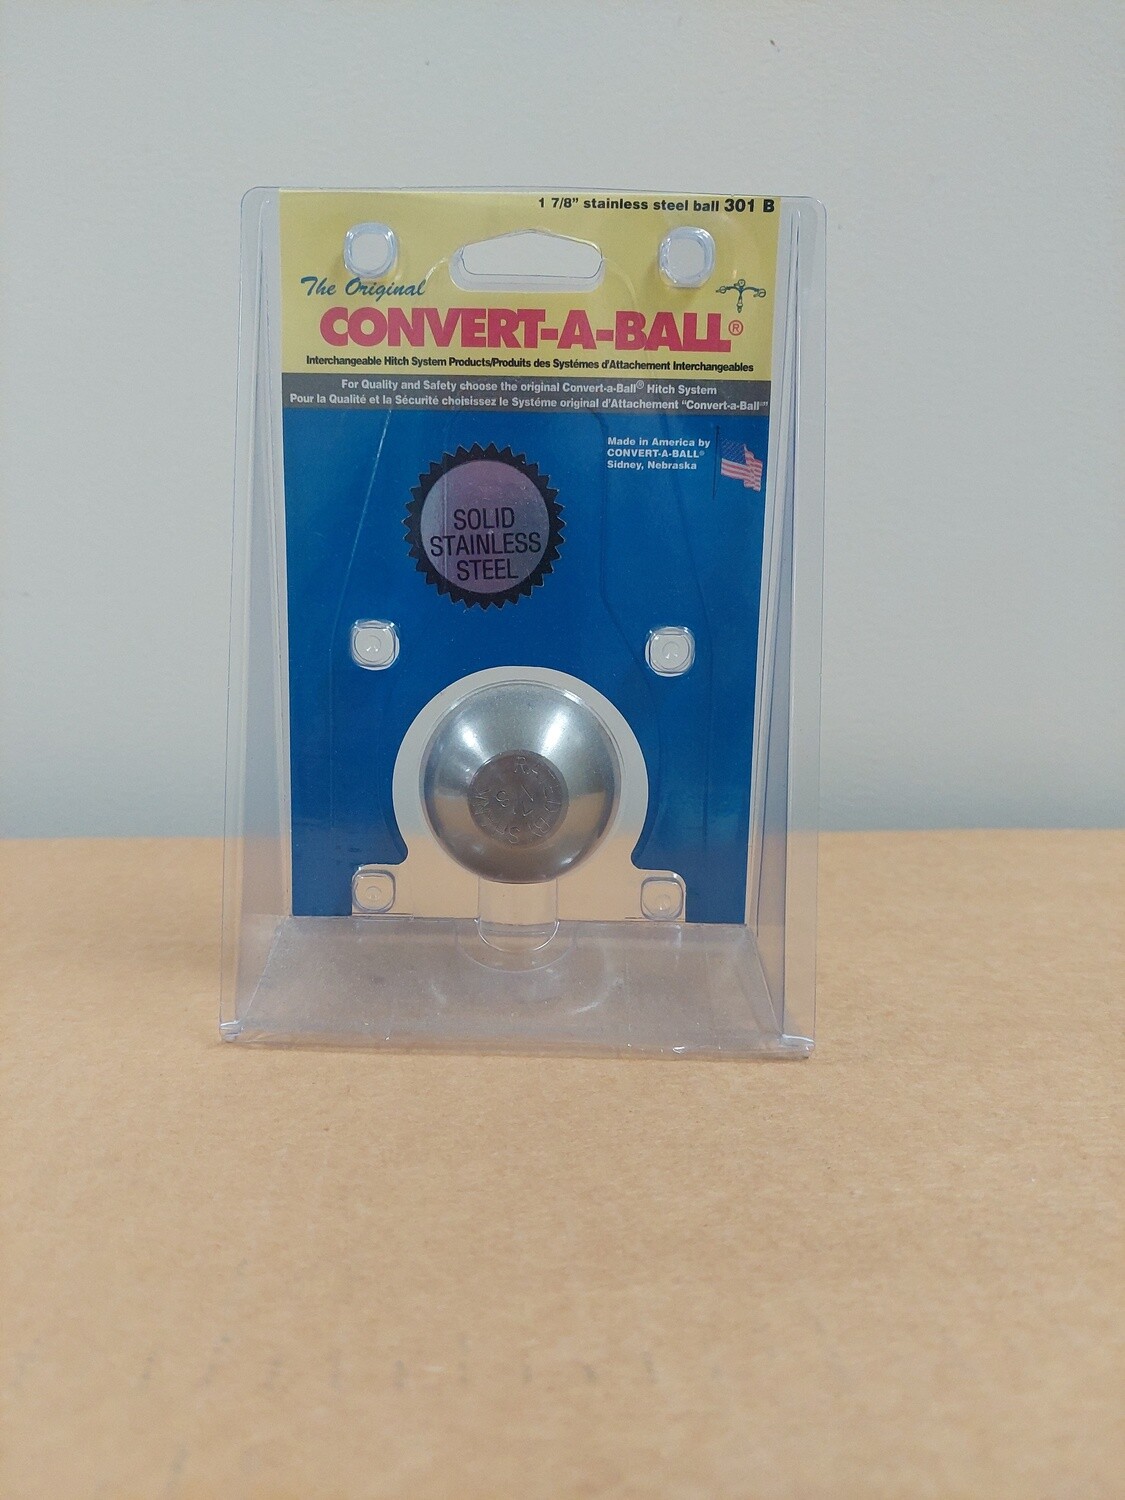 Convert-a-ball 1 7/8" stainless steel Ball